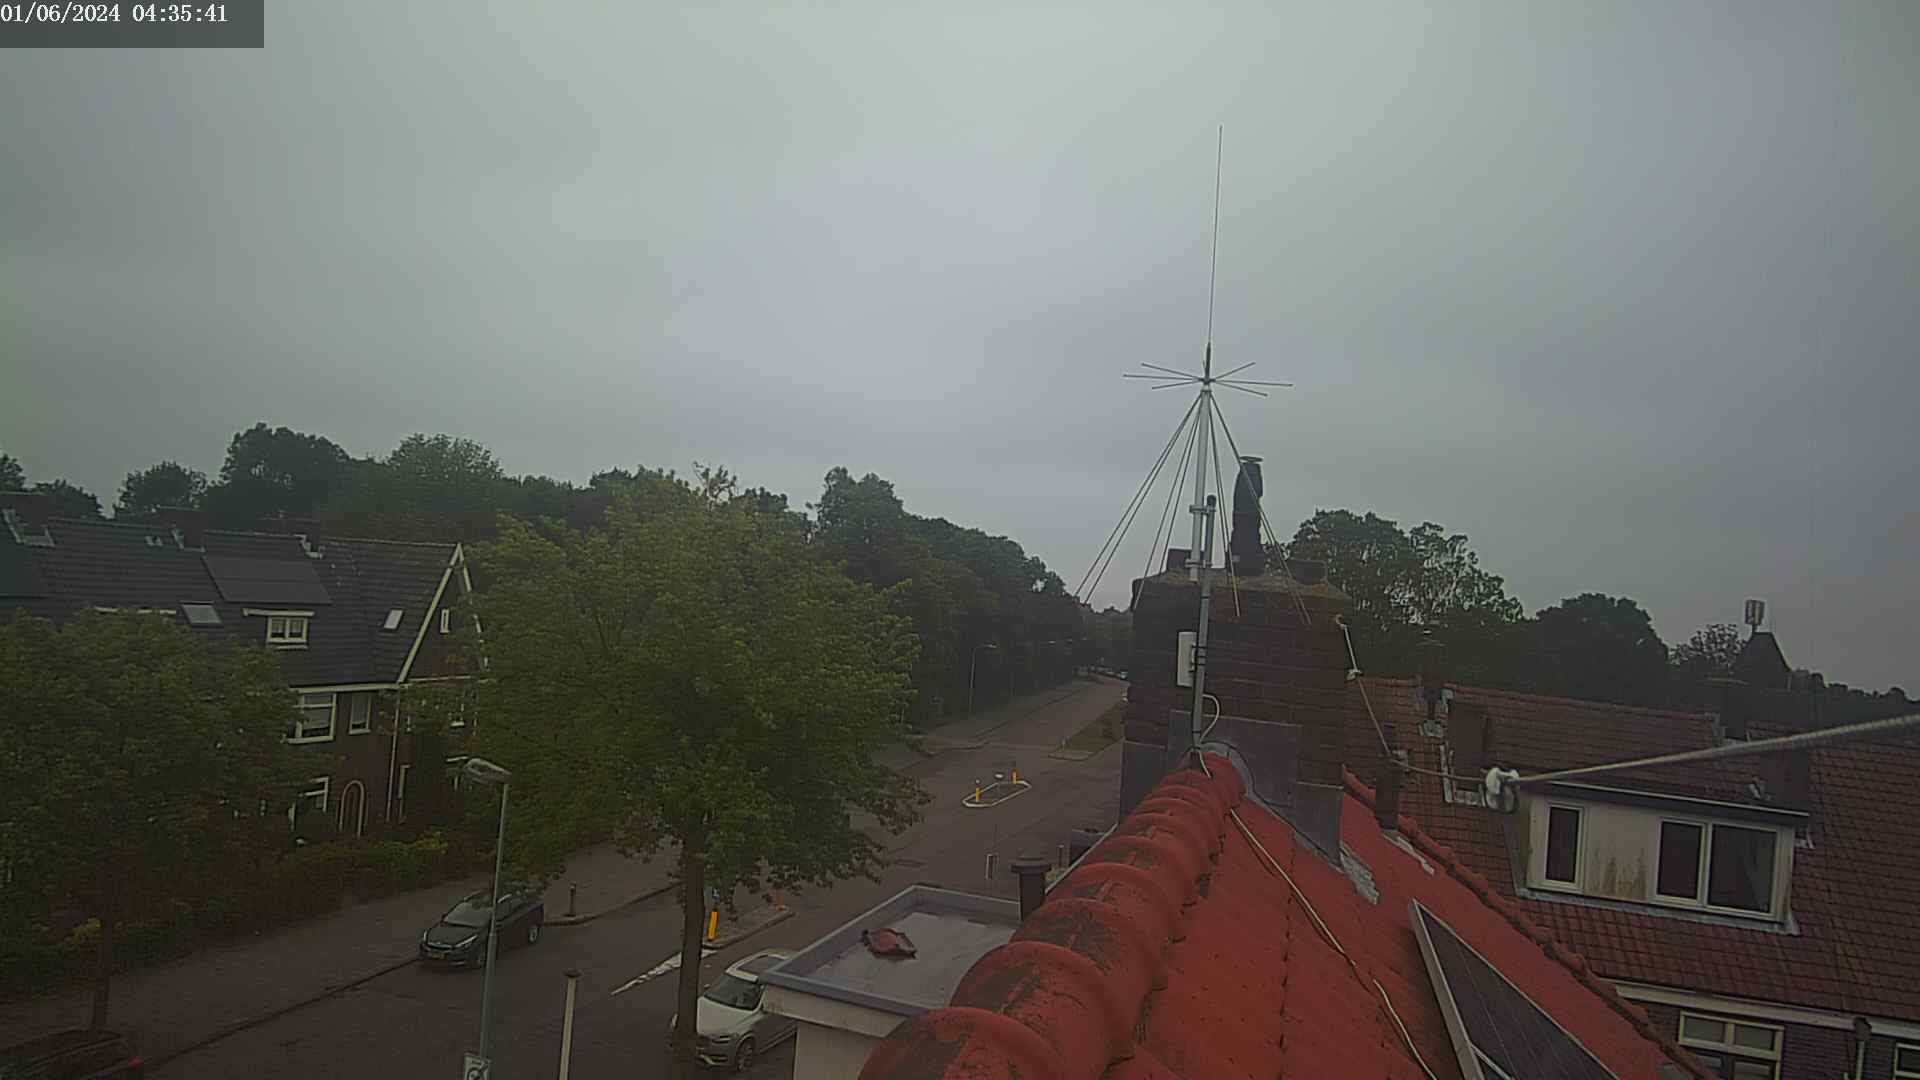 Haarlem Wed. 05:35